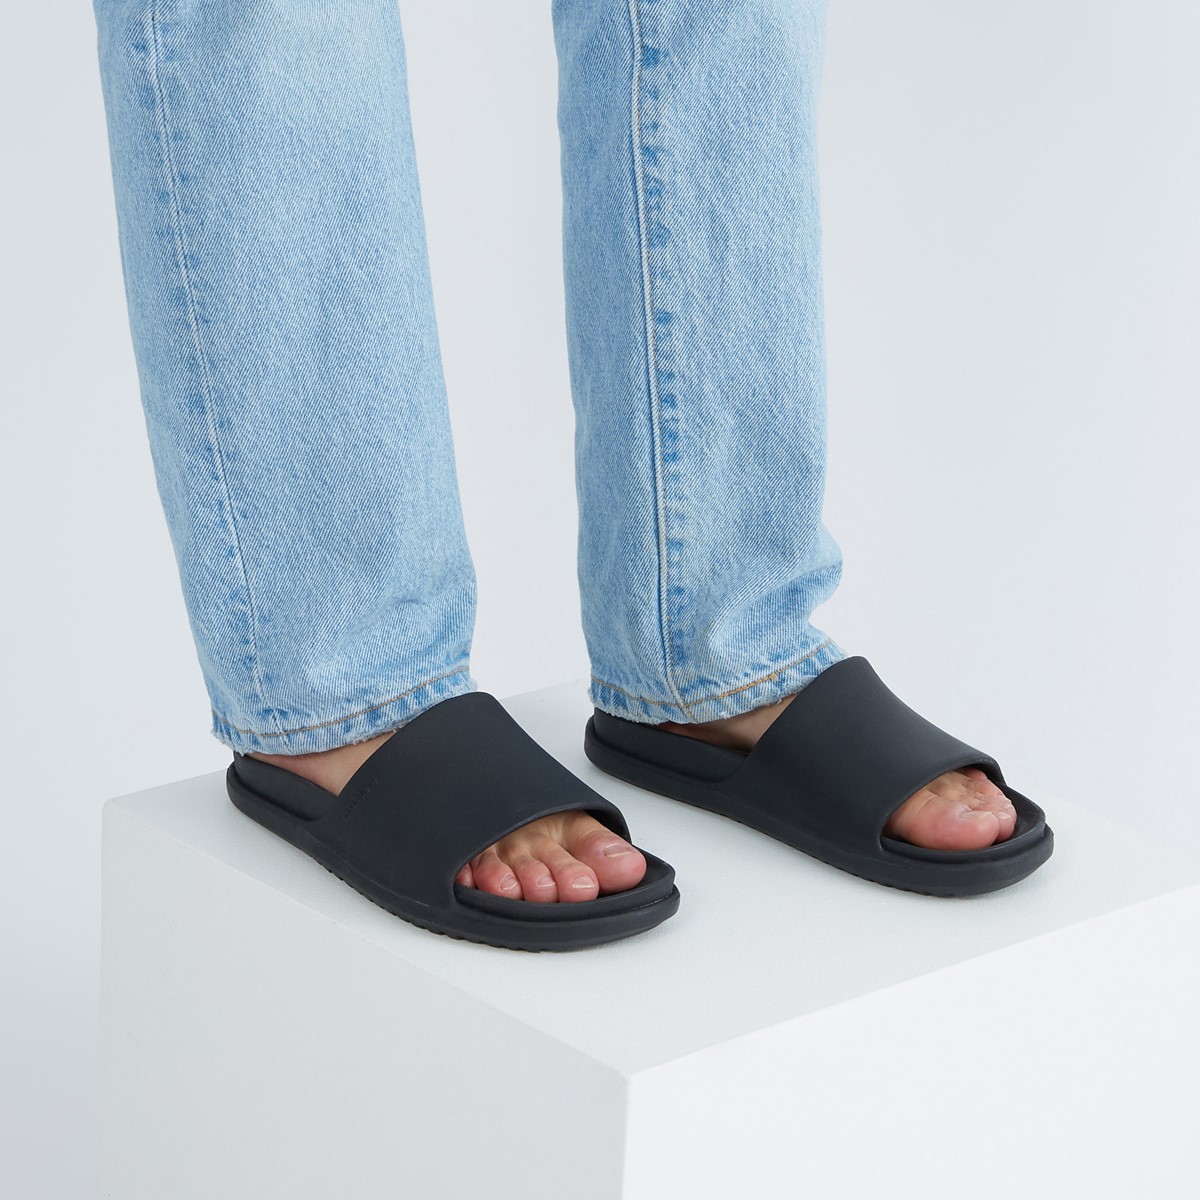 Spencer LX Slide Sandals in Black